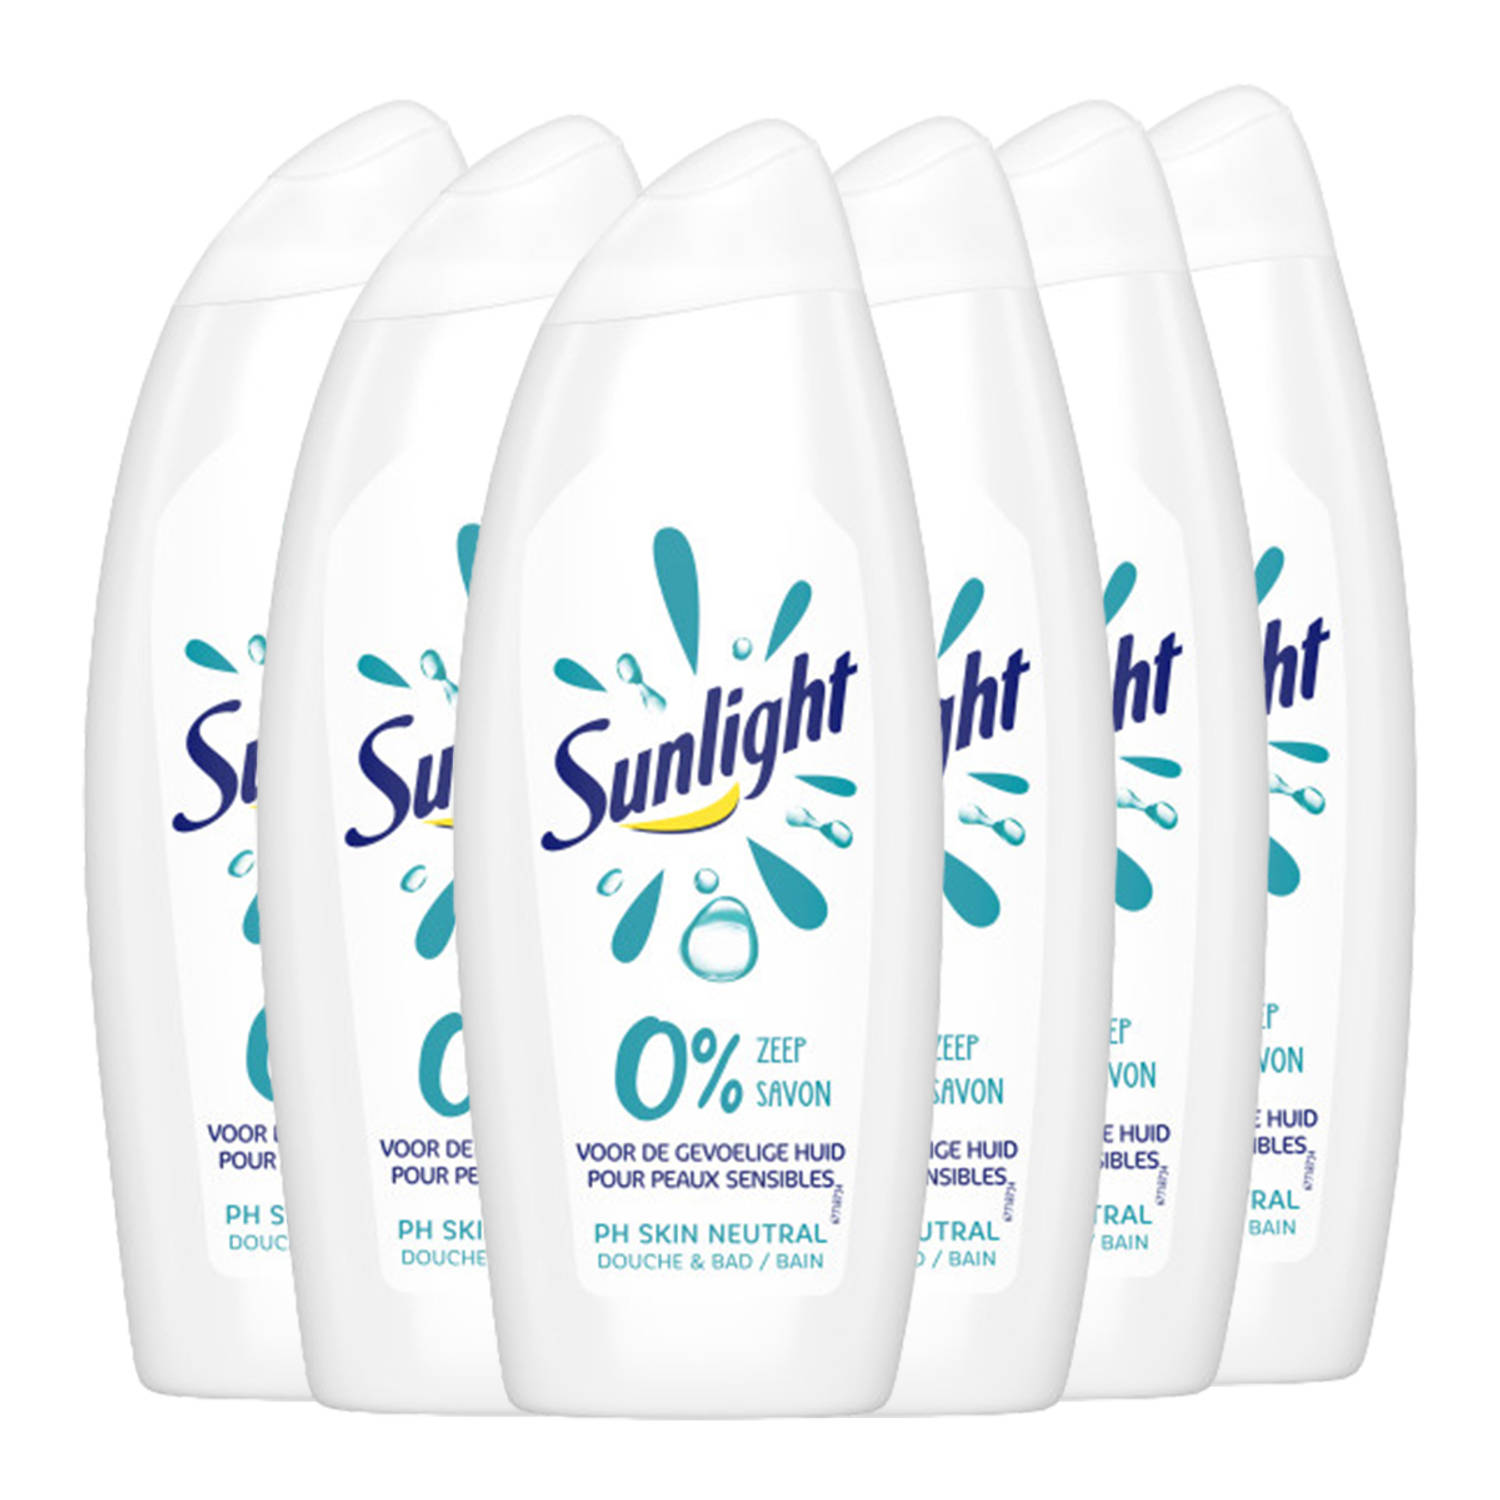 Sunlight Zeep - Badschuim & Douchgel - 0% Zeep - Voor de gevoelige huid - 6 x 750 ml - Voordeelverpakking